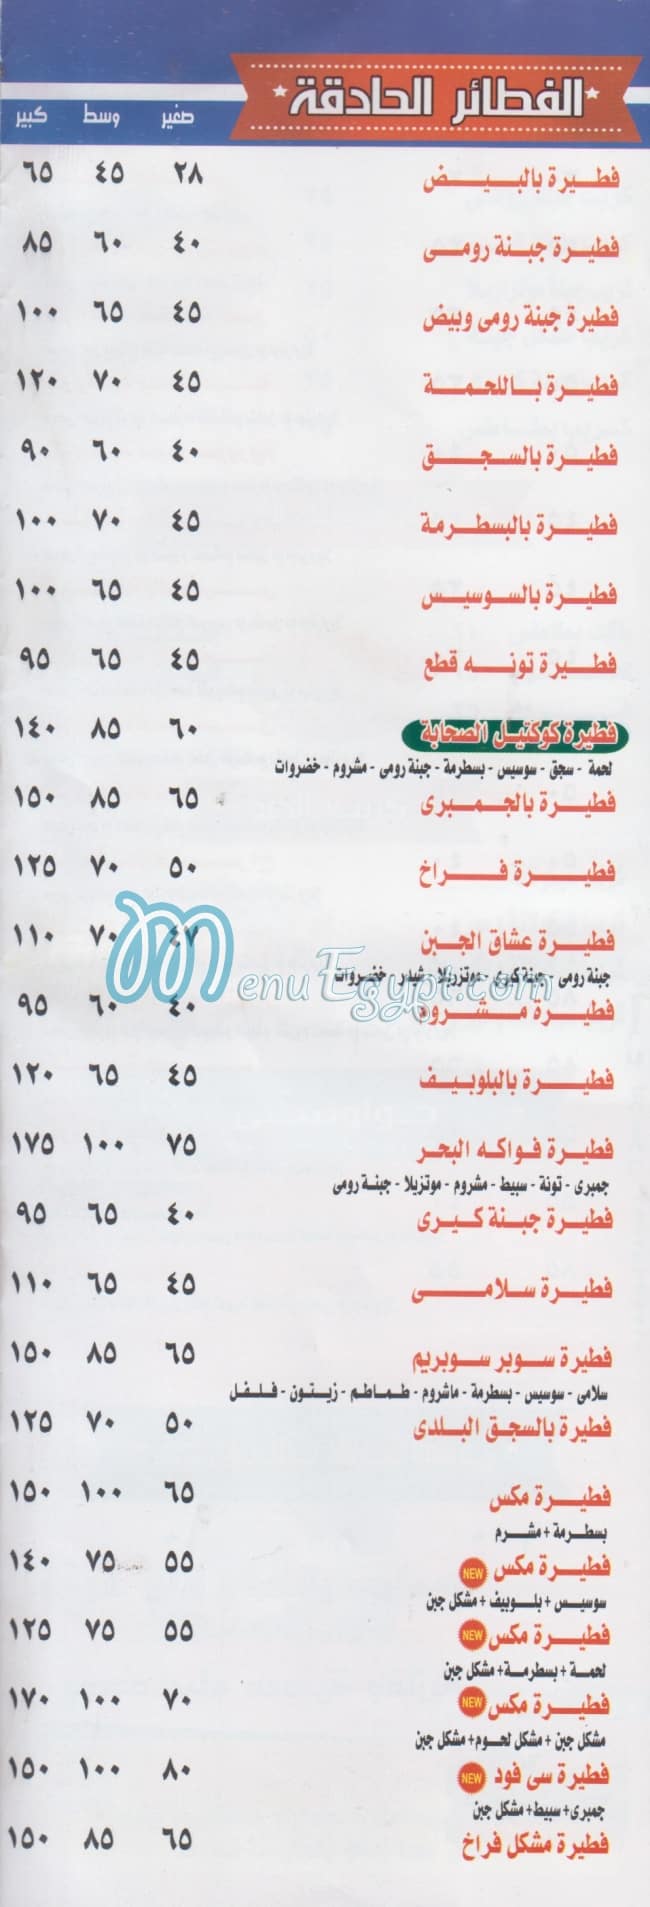 El Sahaba menu prices